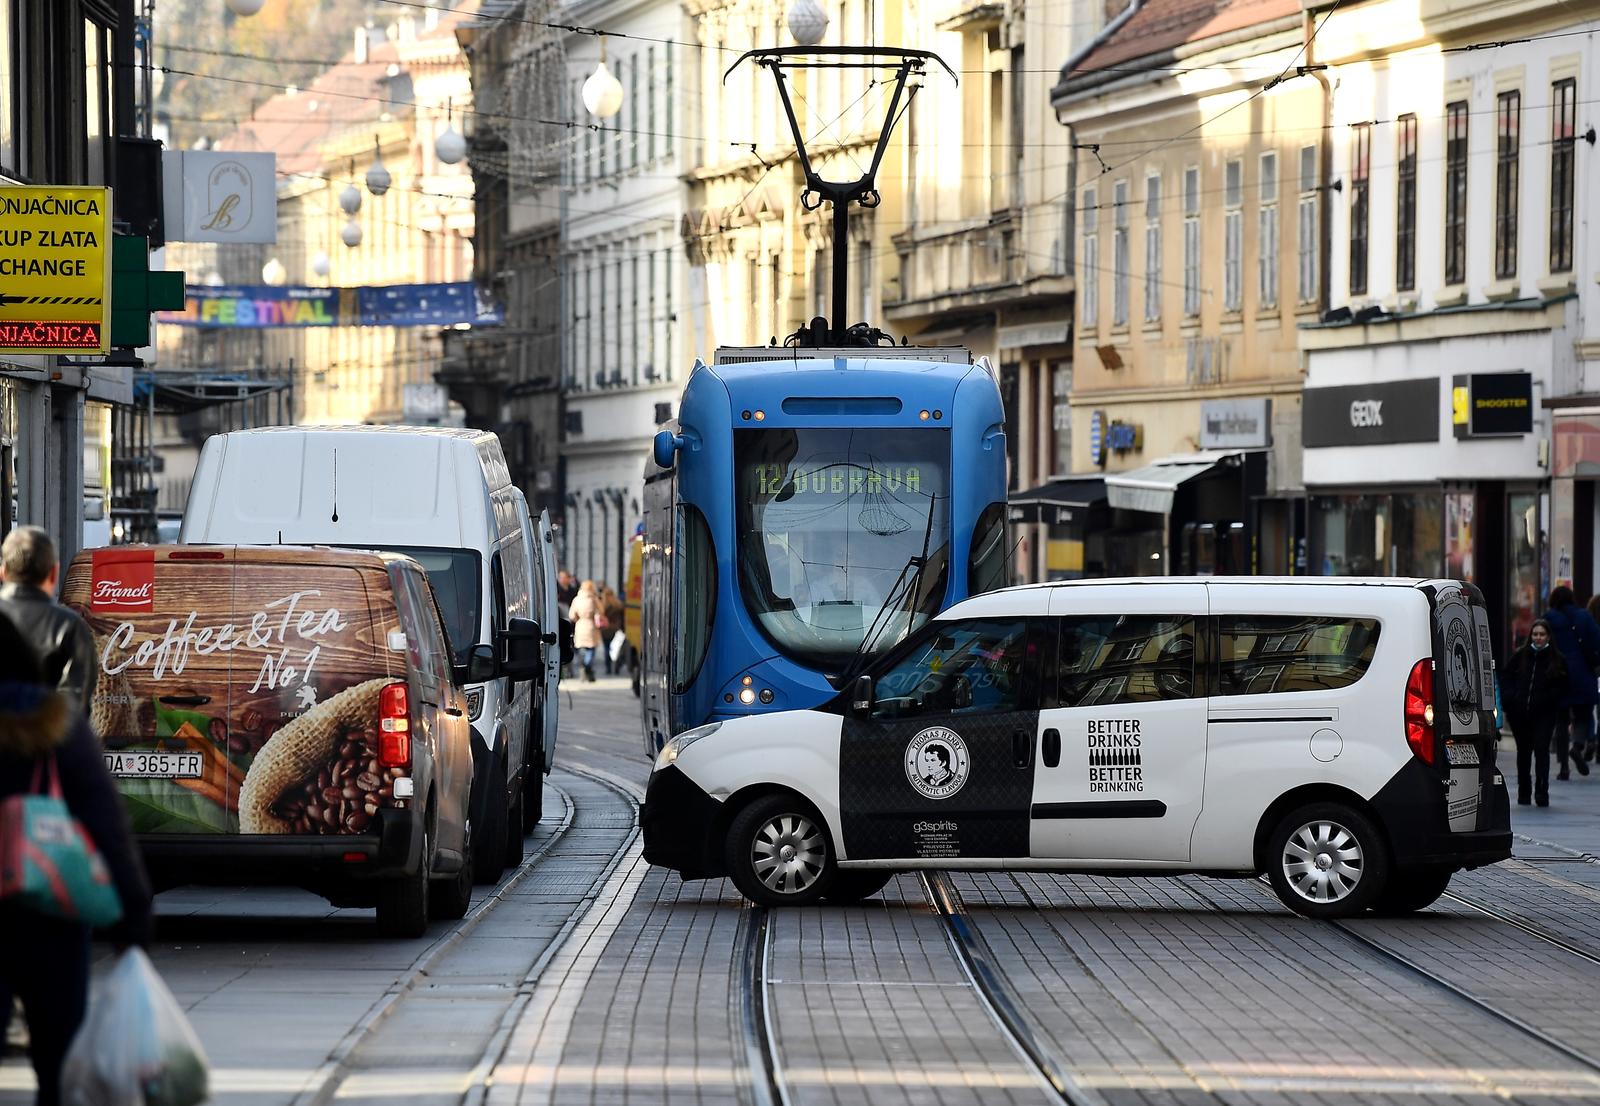 19.11.2021., Zagreb - Svaki dan pjesacku zonu u Ilici okupiraju dostavna vozila, doslovno su shvatili recenicu iz reklame od vrata do vrata, samo su zaboravili da tako ometaju javni gradski prijevoz i pjesacima kretanje po pjesackoj zoni.  Photo: Marko Lukunic/PIXSELL